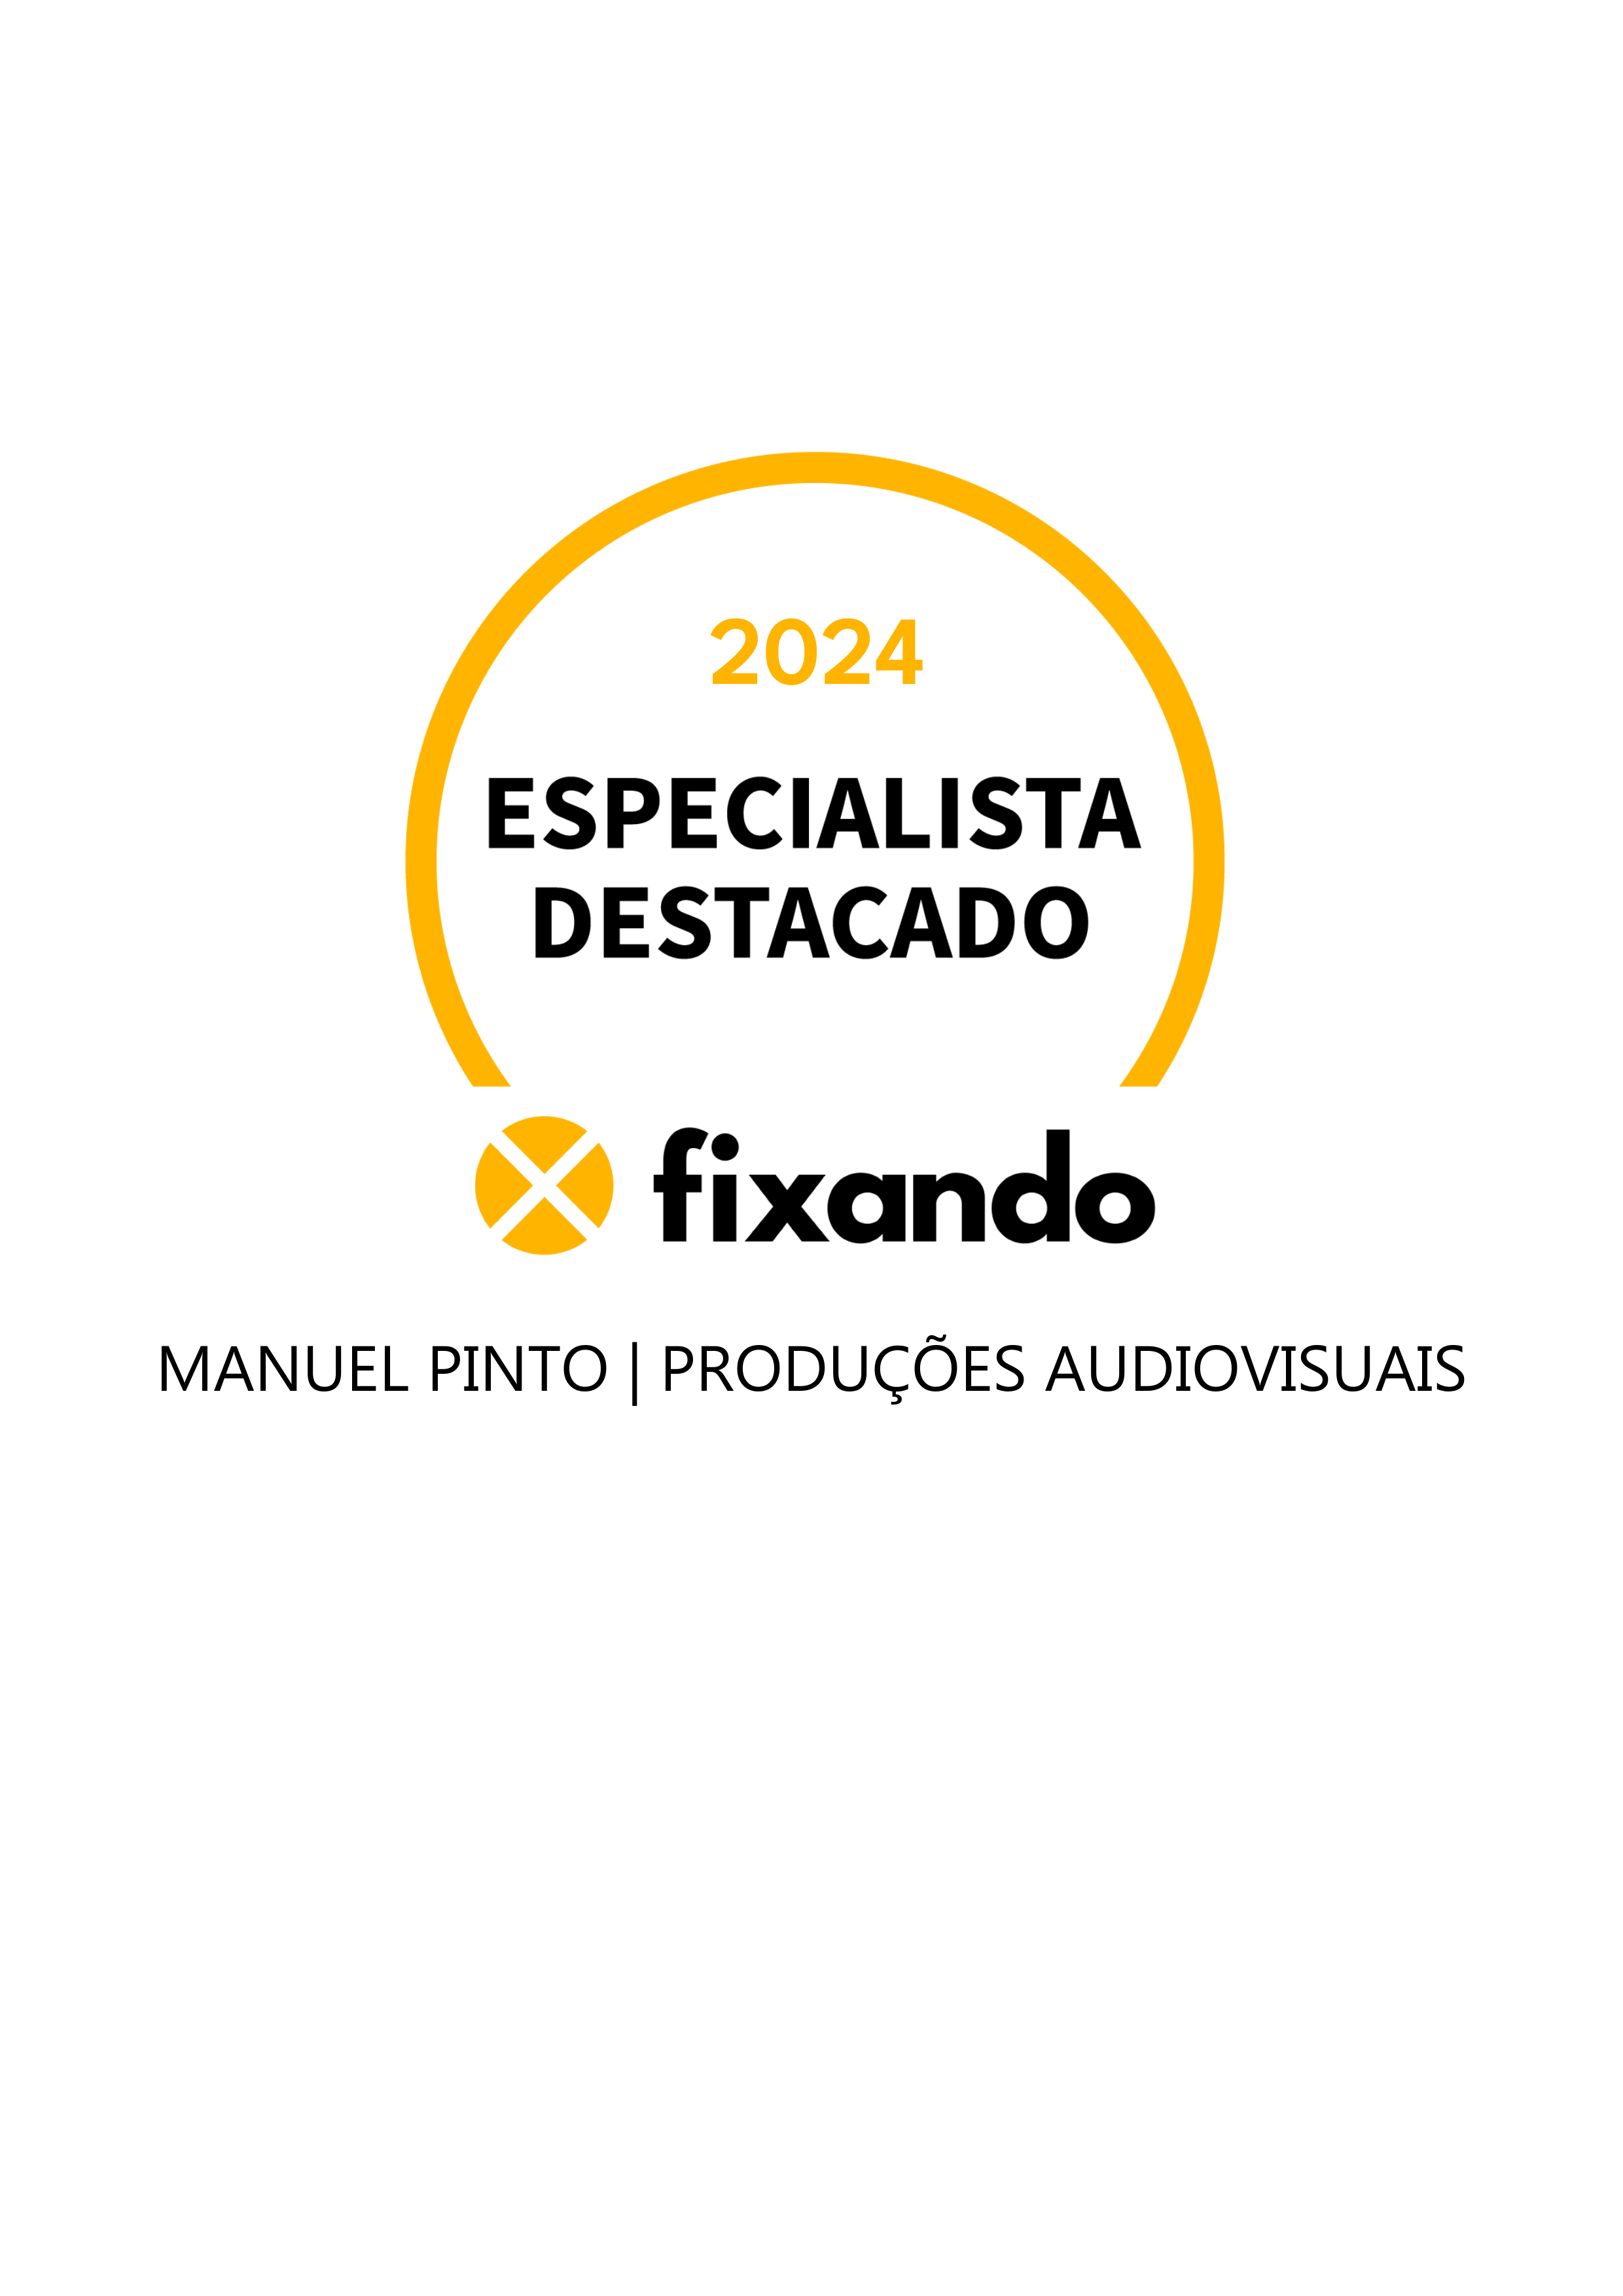 Manuel Pinto | Produções Audiovisuais - Vila Real - Filmagem Comercial